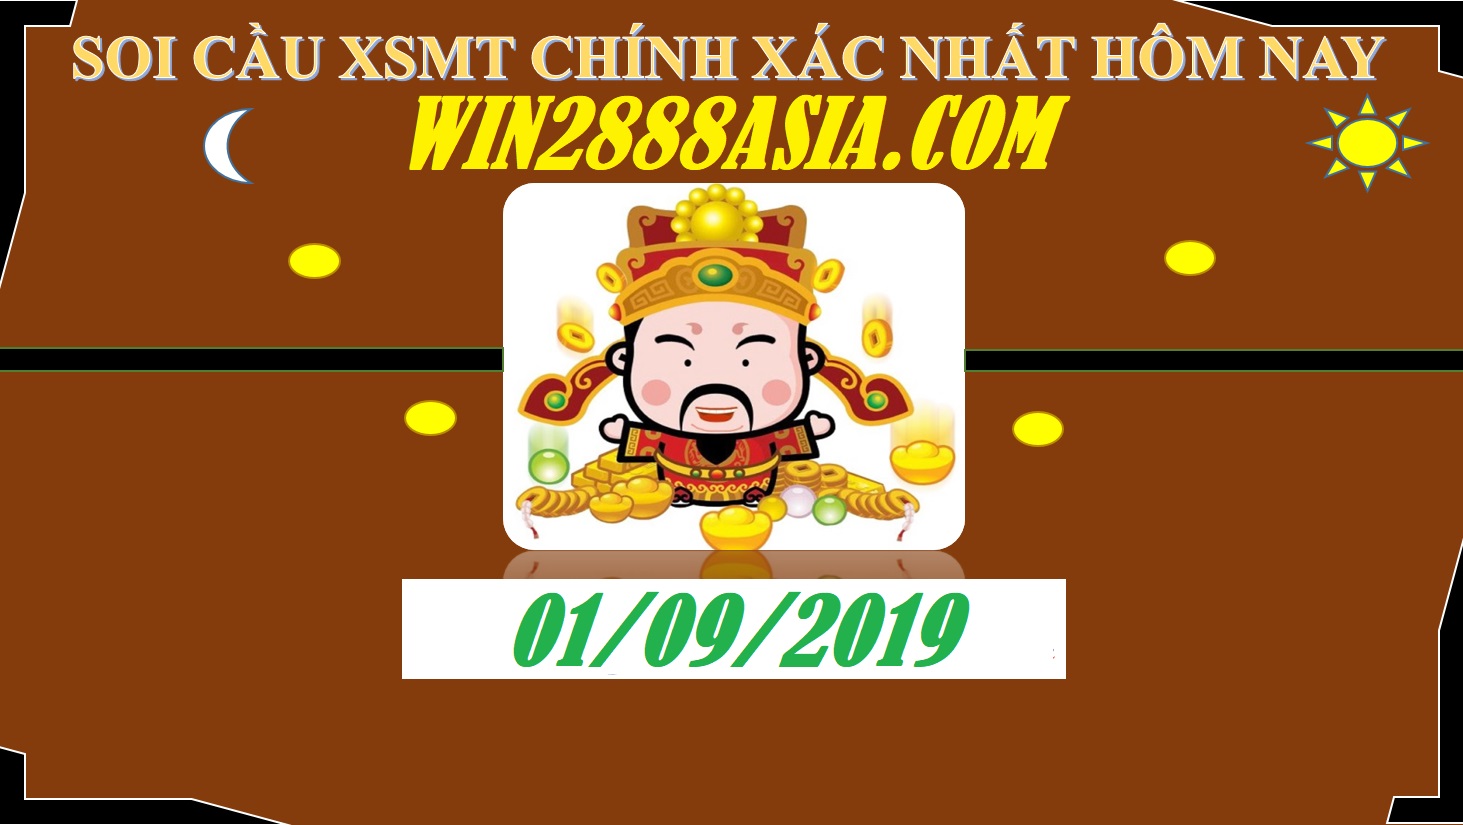 Soi cầu XSMT 1-9-2019 Win2888